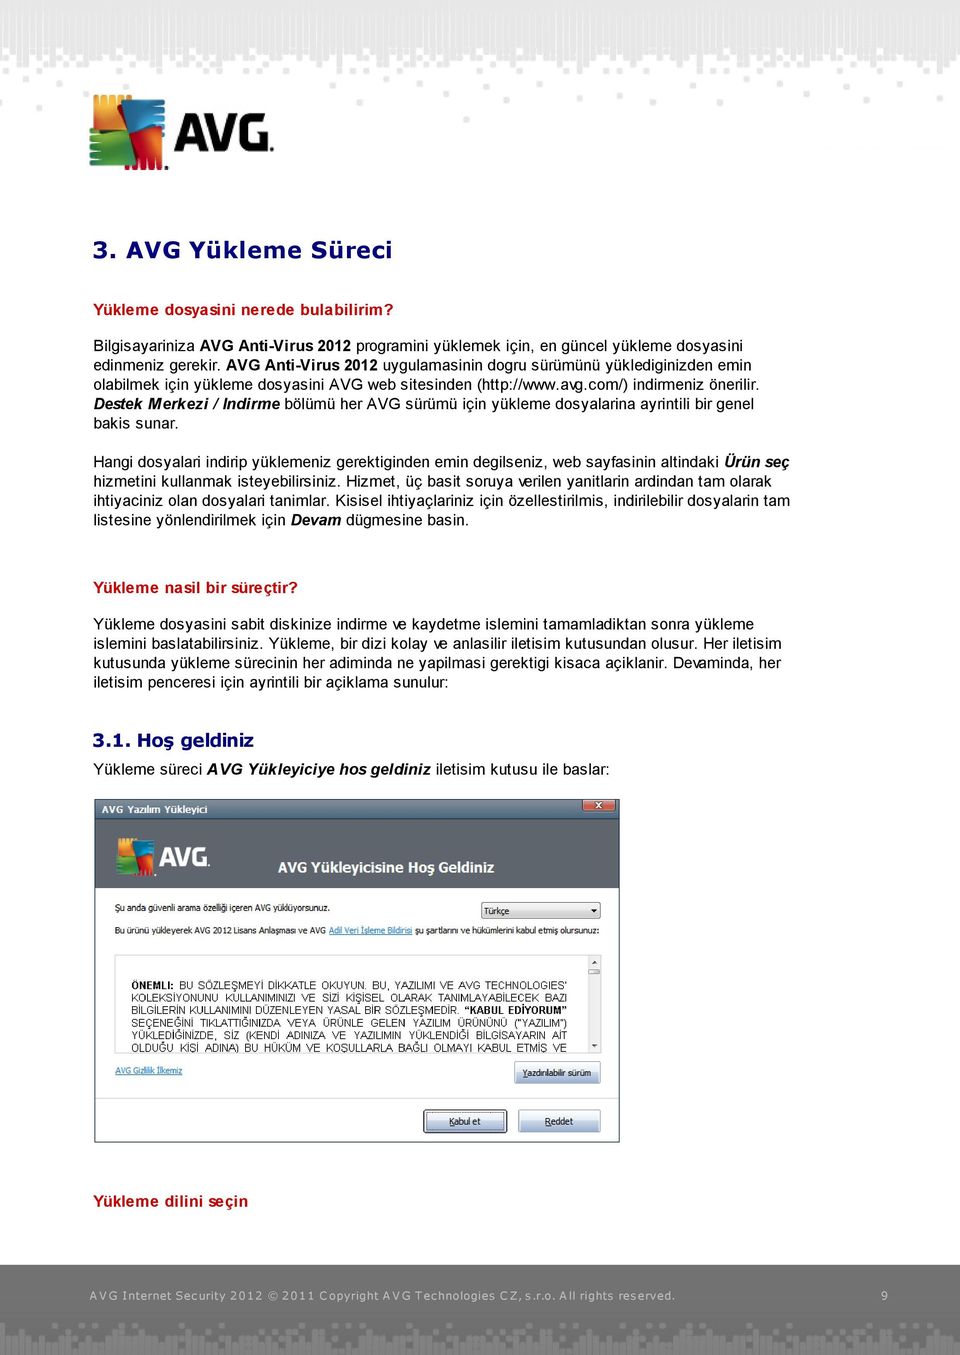 Destek Merkezi / Indirme bölümü her AVG sürümü için yükleme dosyalarina ayrintili bir genel bakis sunar.